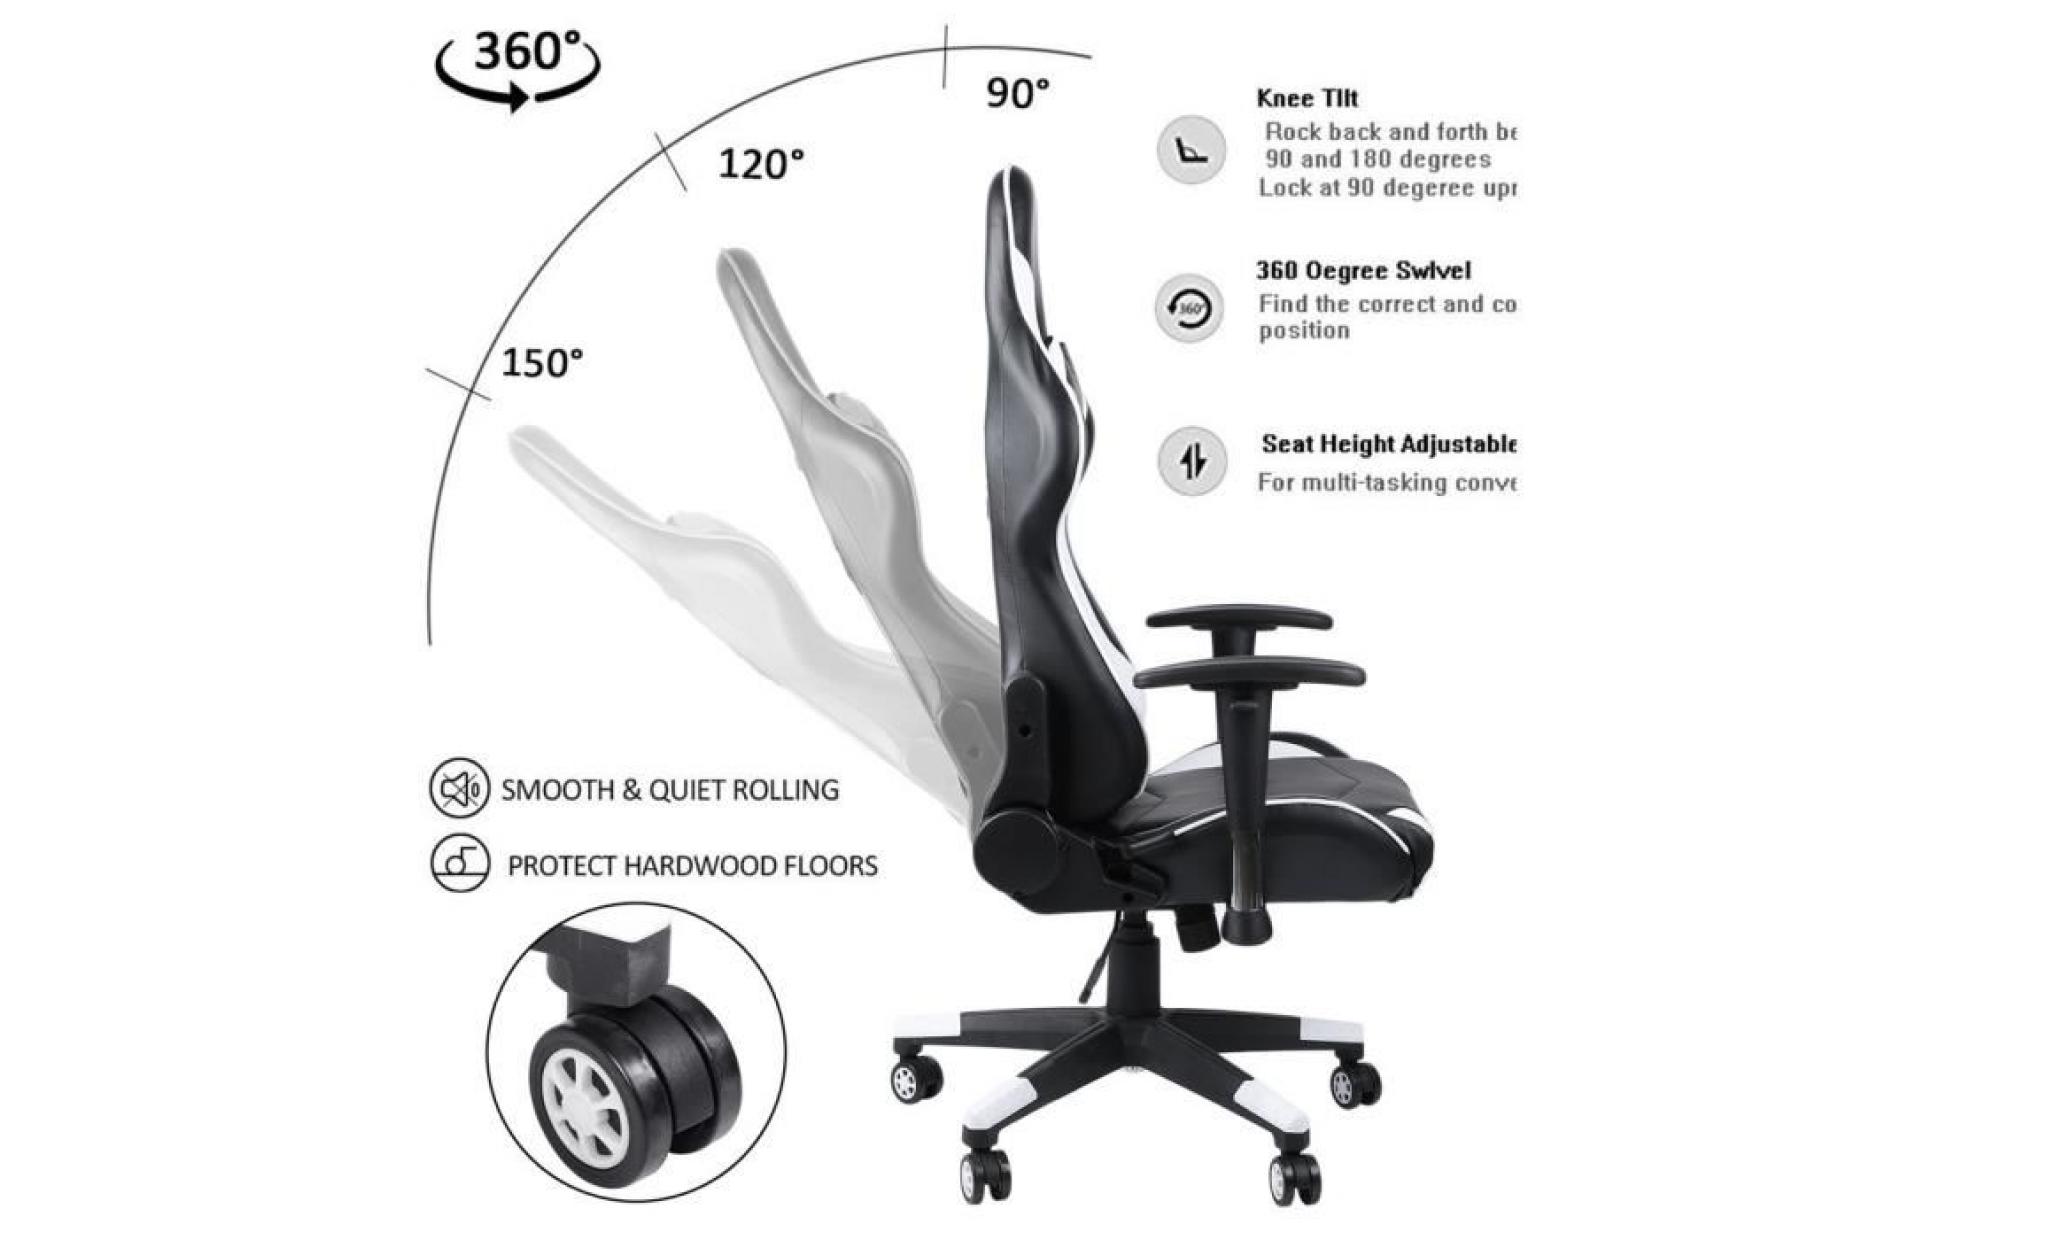 leshp® chaise de bureau, fauteuil de bureau racing sport noir rouge  hauteur réglable   pivotante pas cher